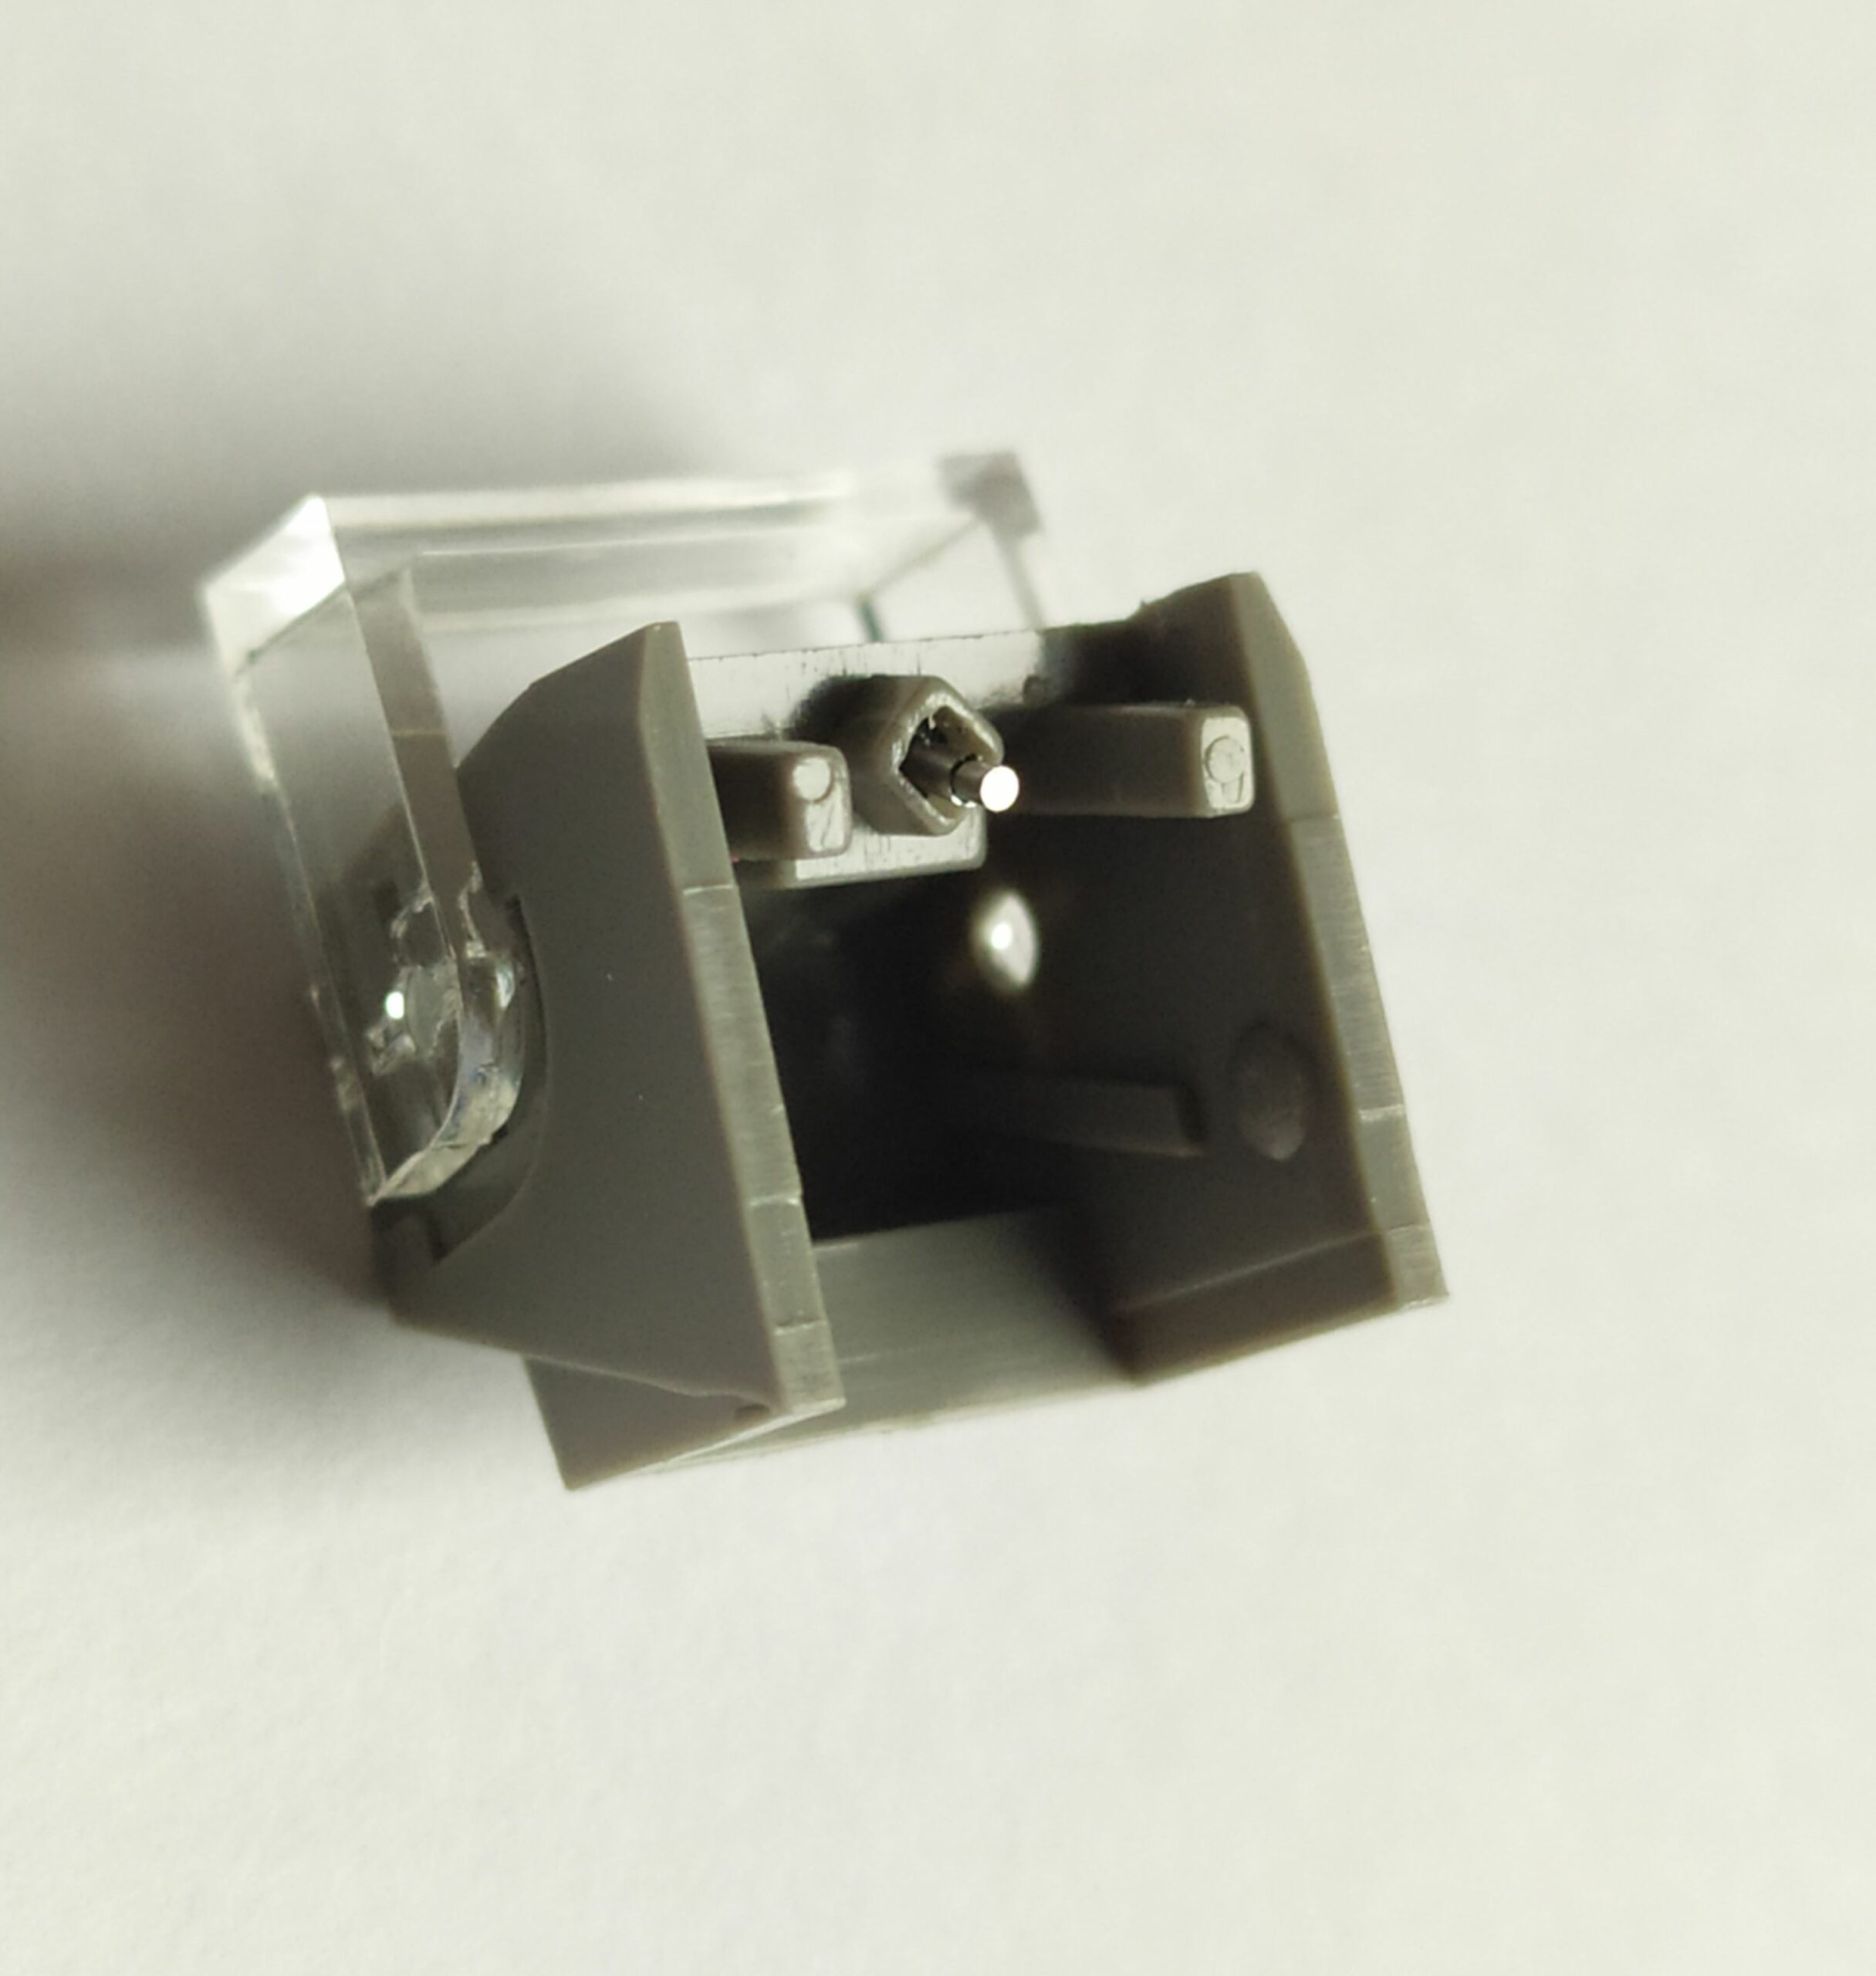 AKAI AP-003 – Diamant pointe de lecture ATS11 pour platine vinyle